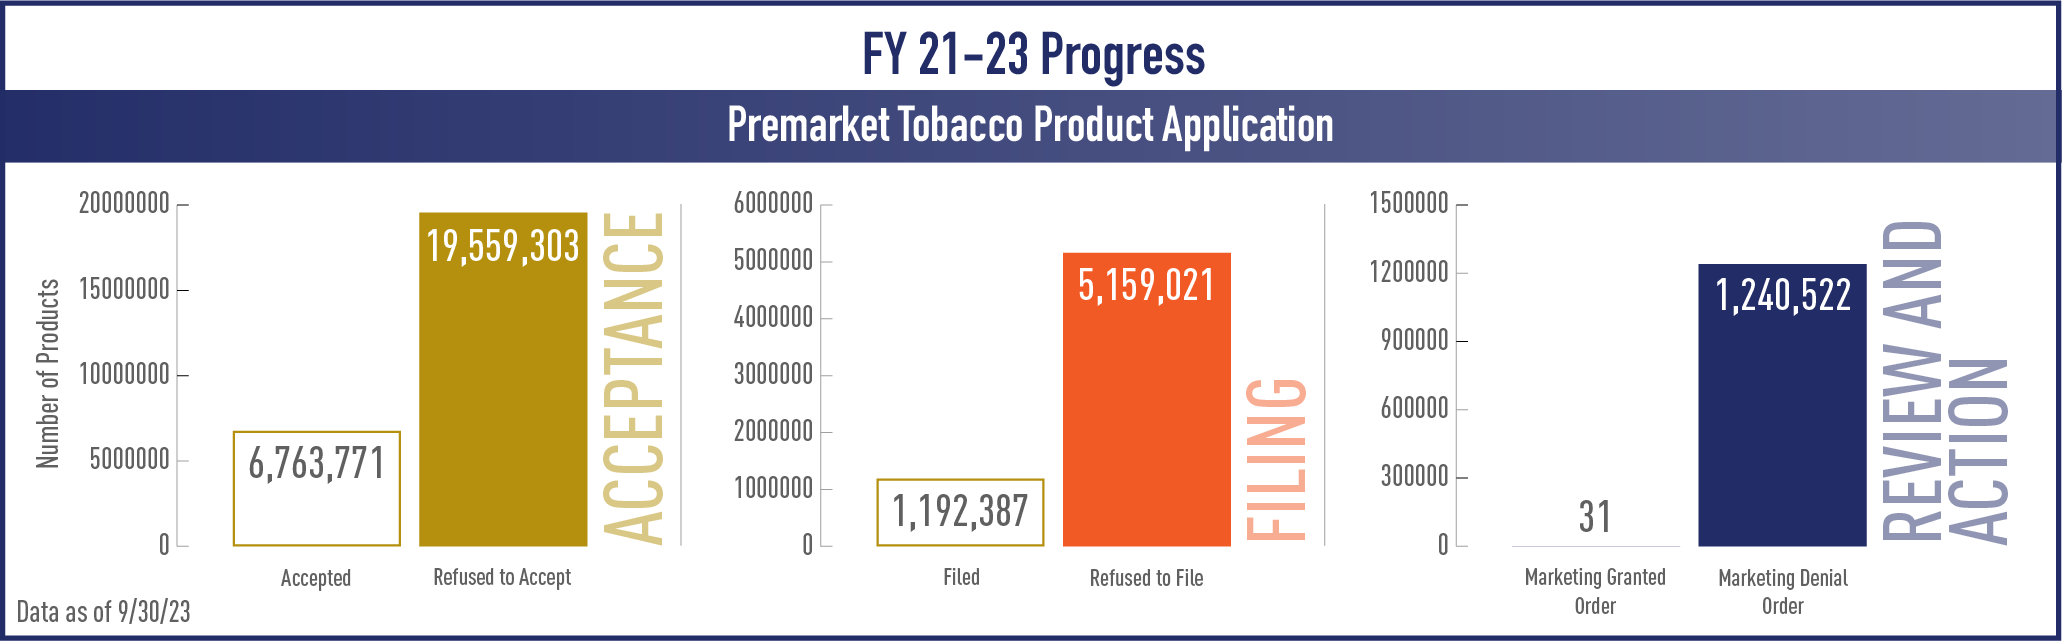 FY 21-23 Premarket Tobacco Product Applications Progress